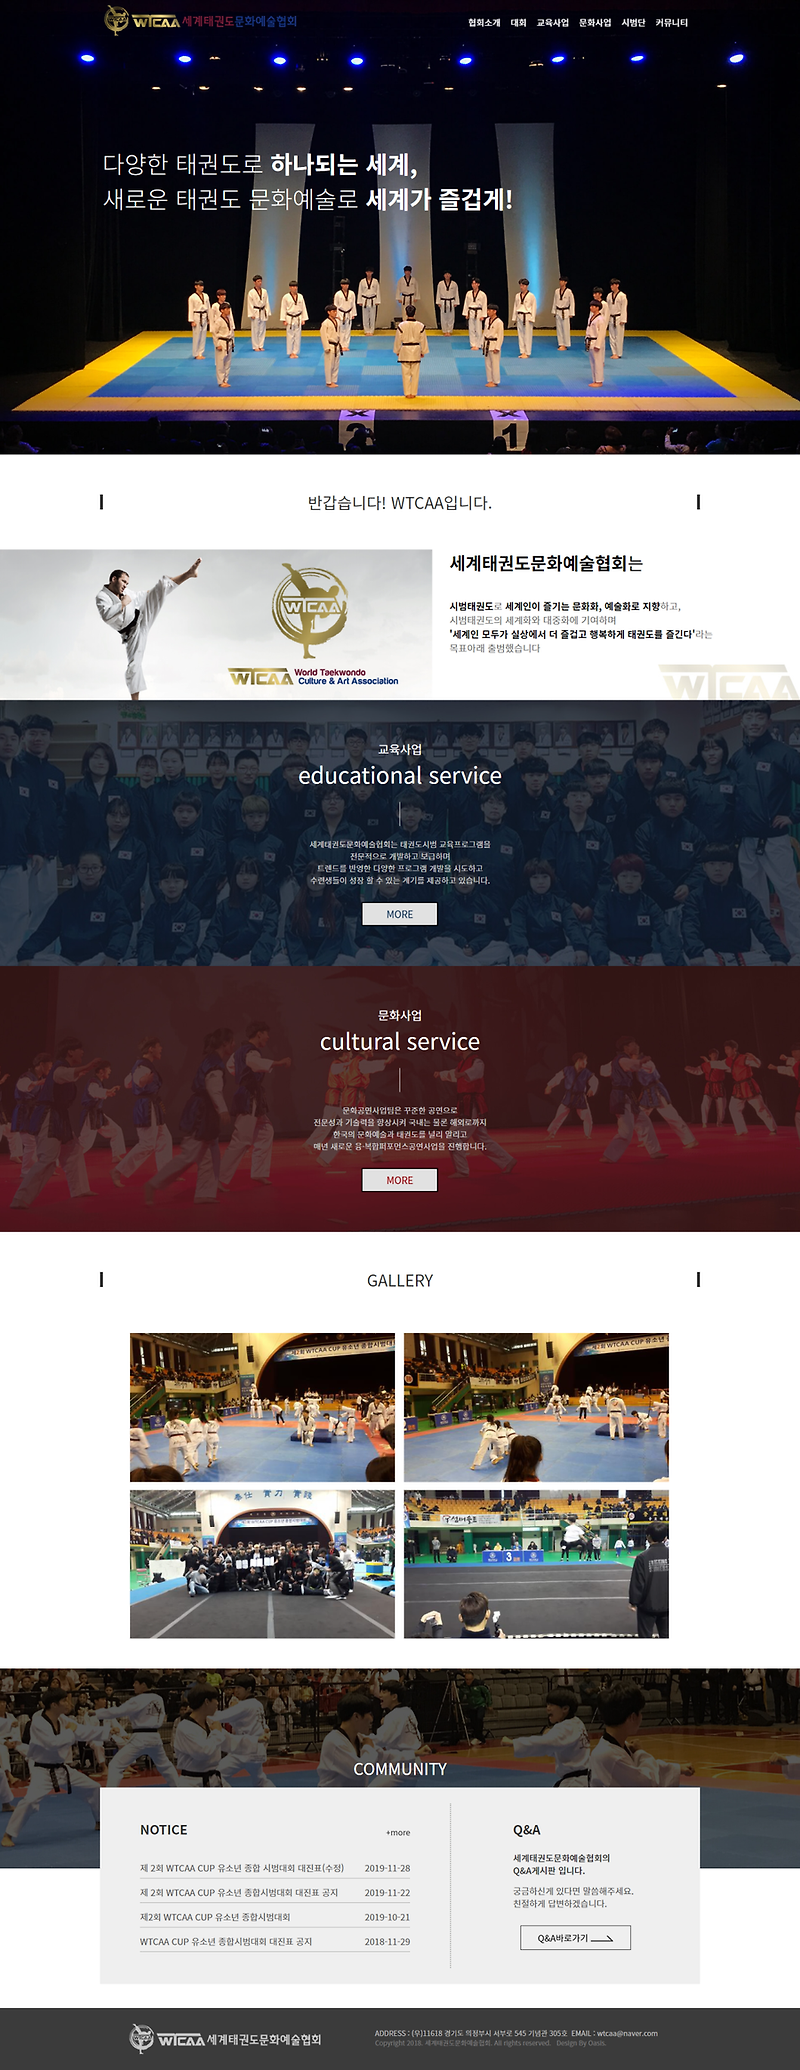 협회 홈페이지제작_세계태권도문화예술협회 홈페이지 웹사이트 제작. ( 반응형 웹 )